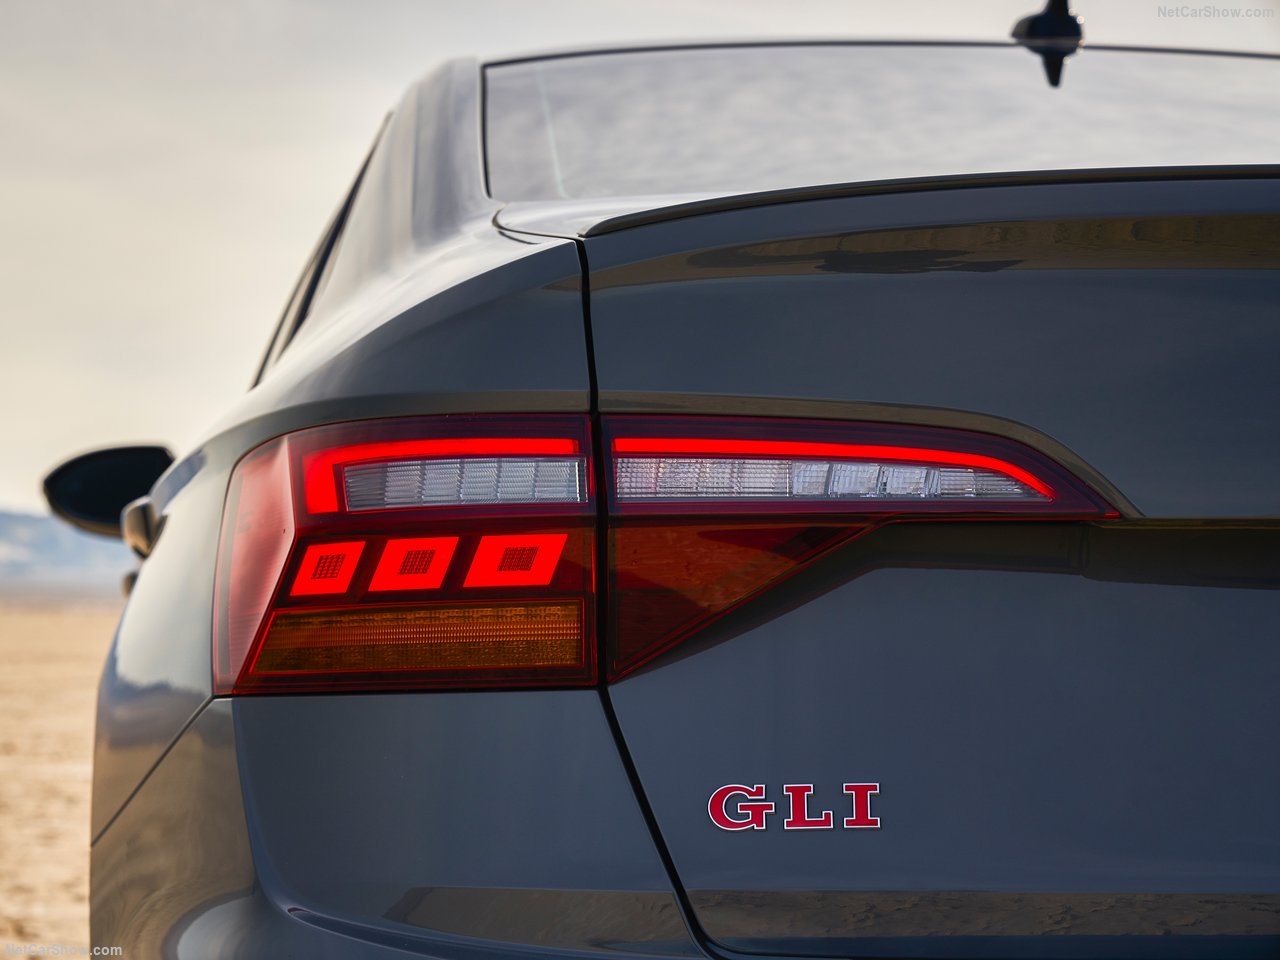 Volkswagen Jetta GLI tanıtıldı! İşte 2019 Volkswagen Jetta GLI’nin motor ve donanım özellikleri...